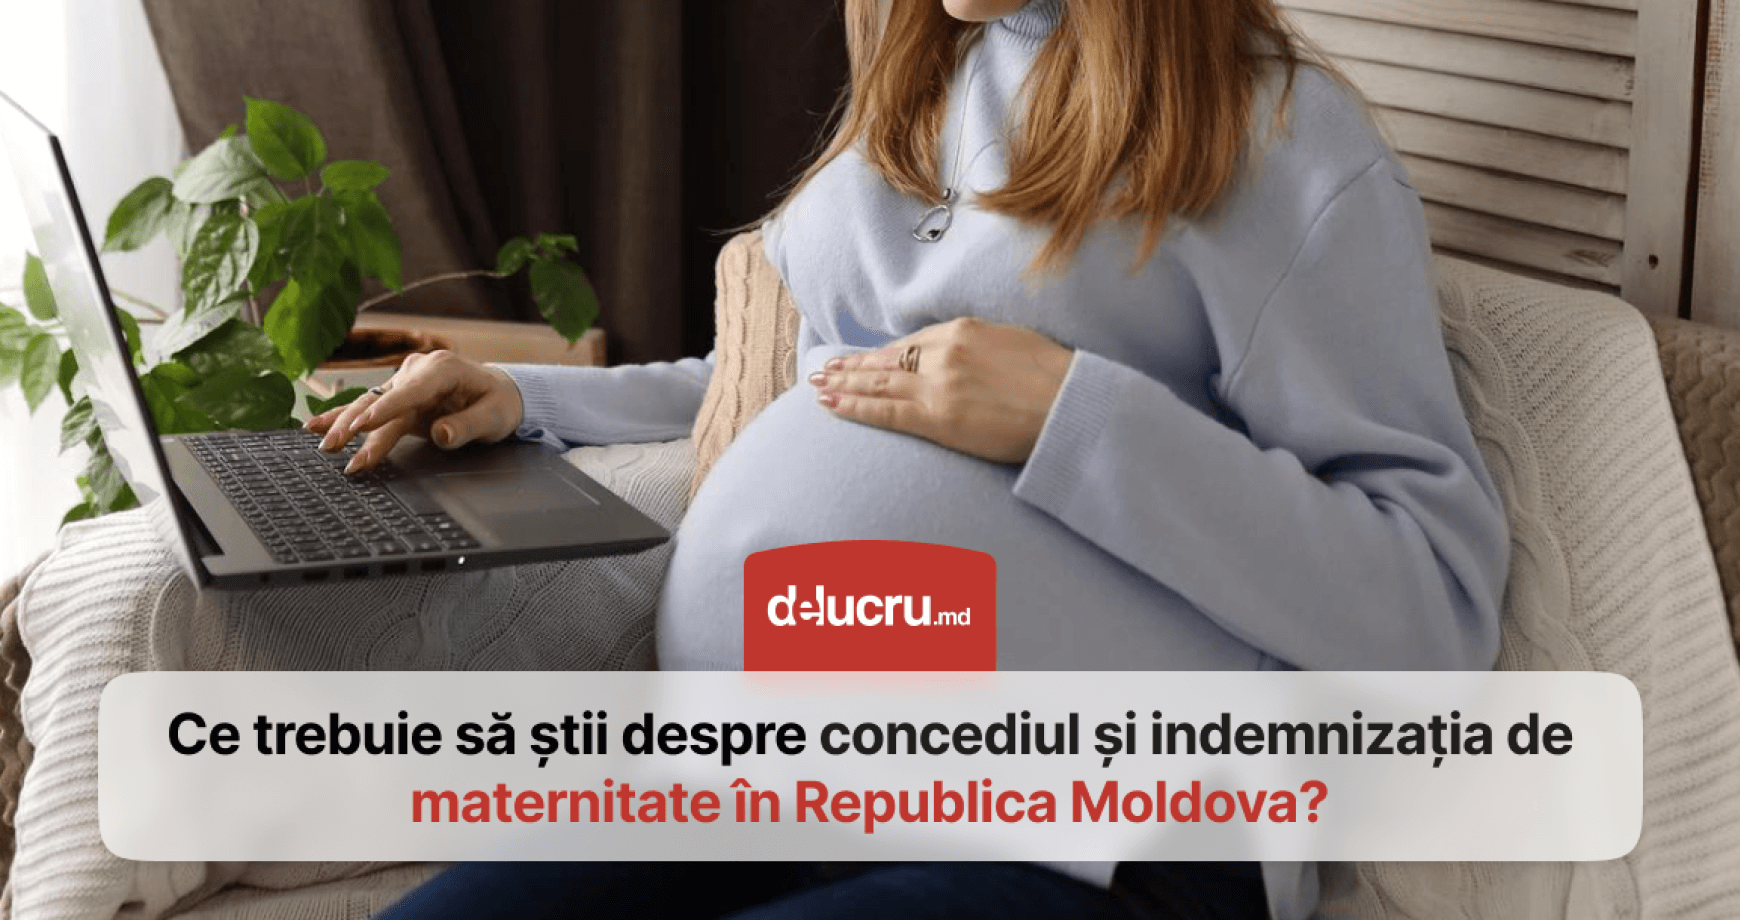 Concediul de maternitate și indemnizația de maternitate în Republica Moldova